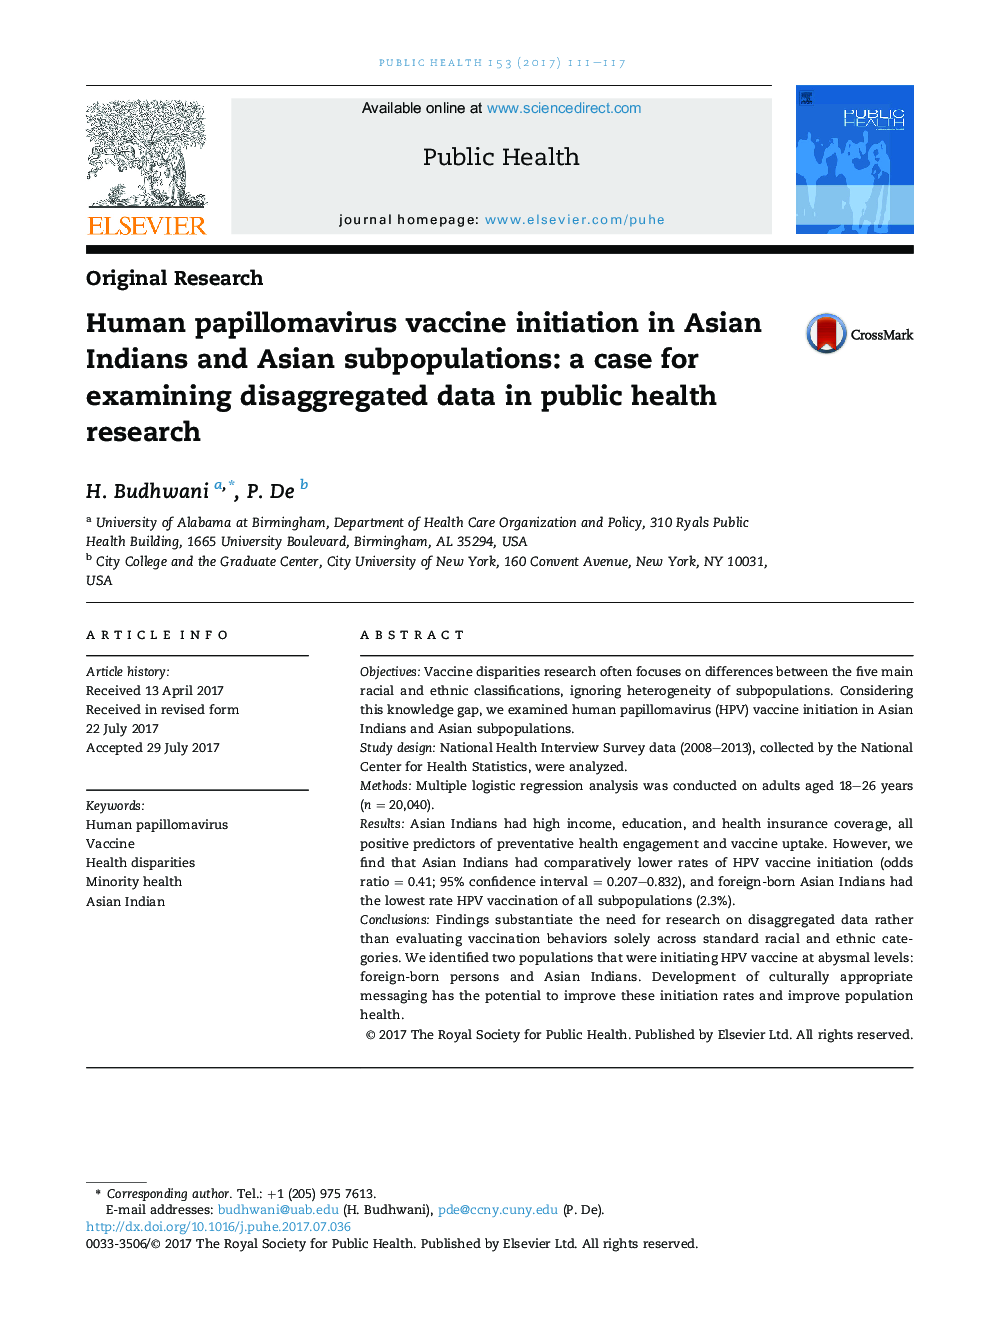 آغاز واکسن انسانی پاپیلومای در سرخپوستان آسیایی و زیرمجموعه های آسیایی: مورد برای بررسی داده های جمع آوری شده در تحقیقات بهداشت عمومی 